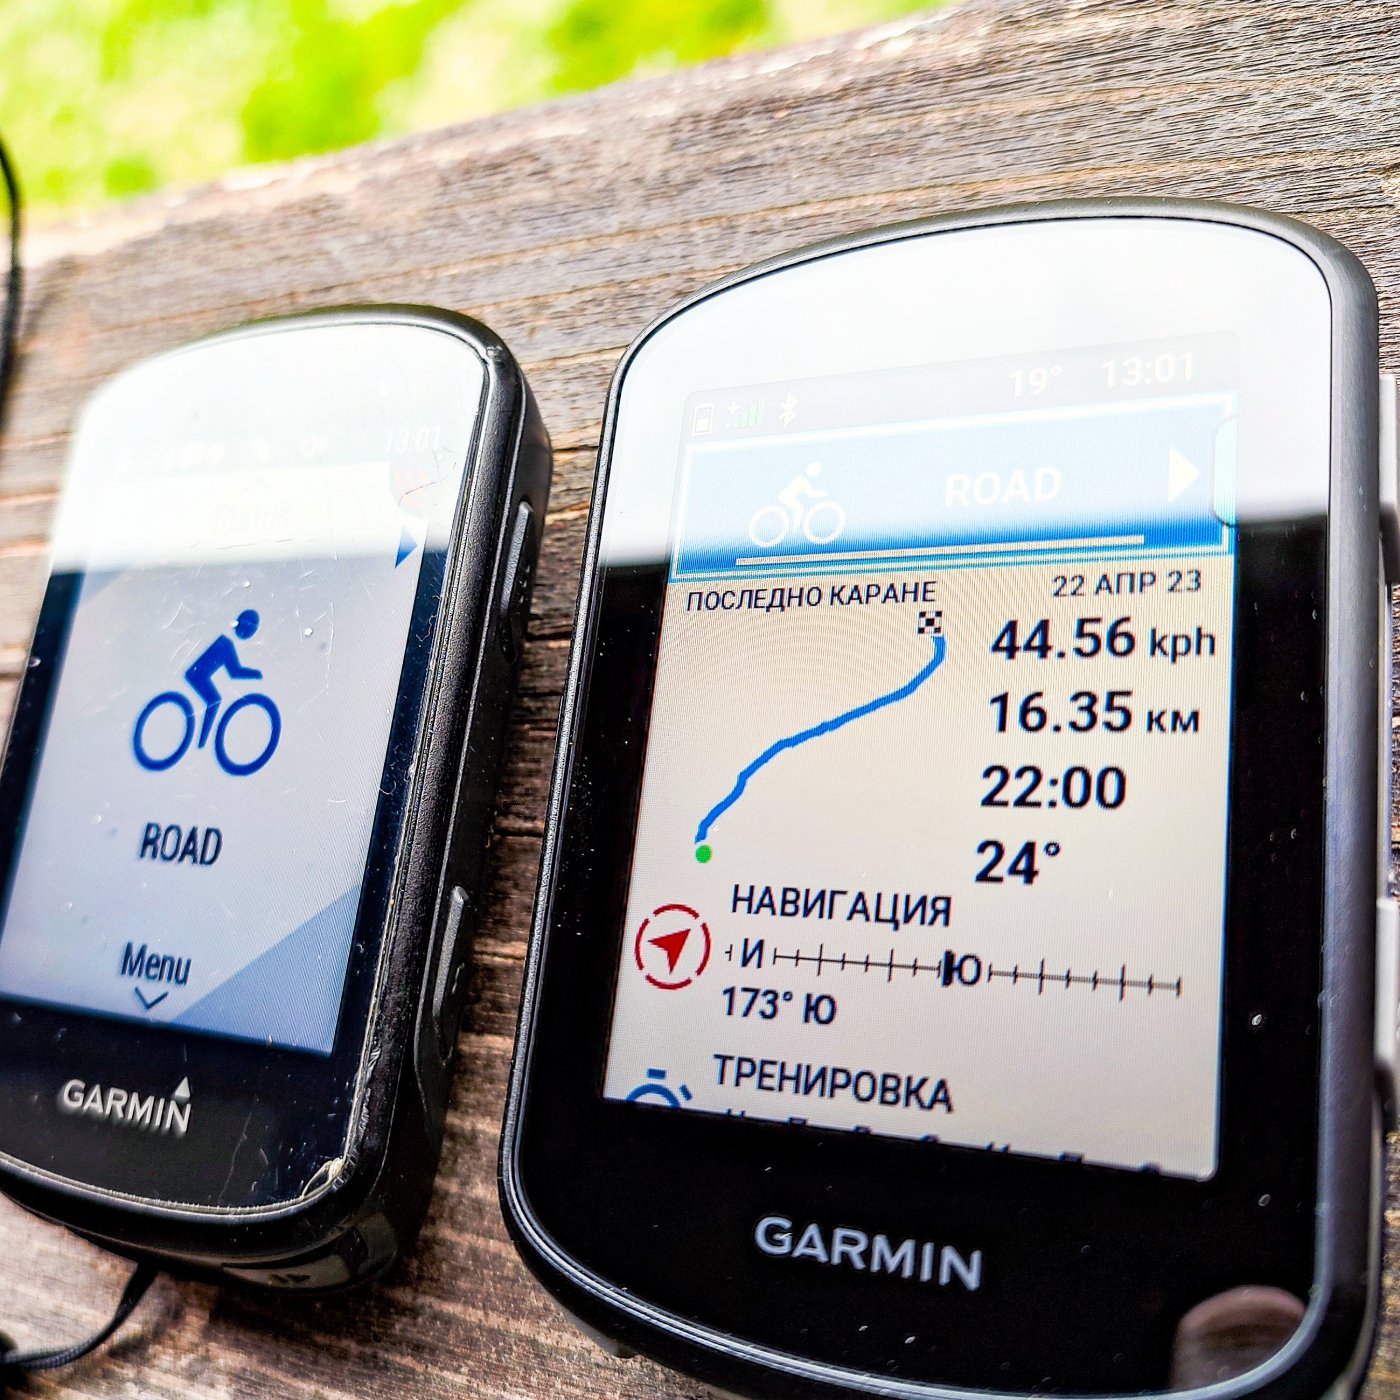 Garmin Explore 2 Bike Navigation Test VS 1040 VS Explore 1 